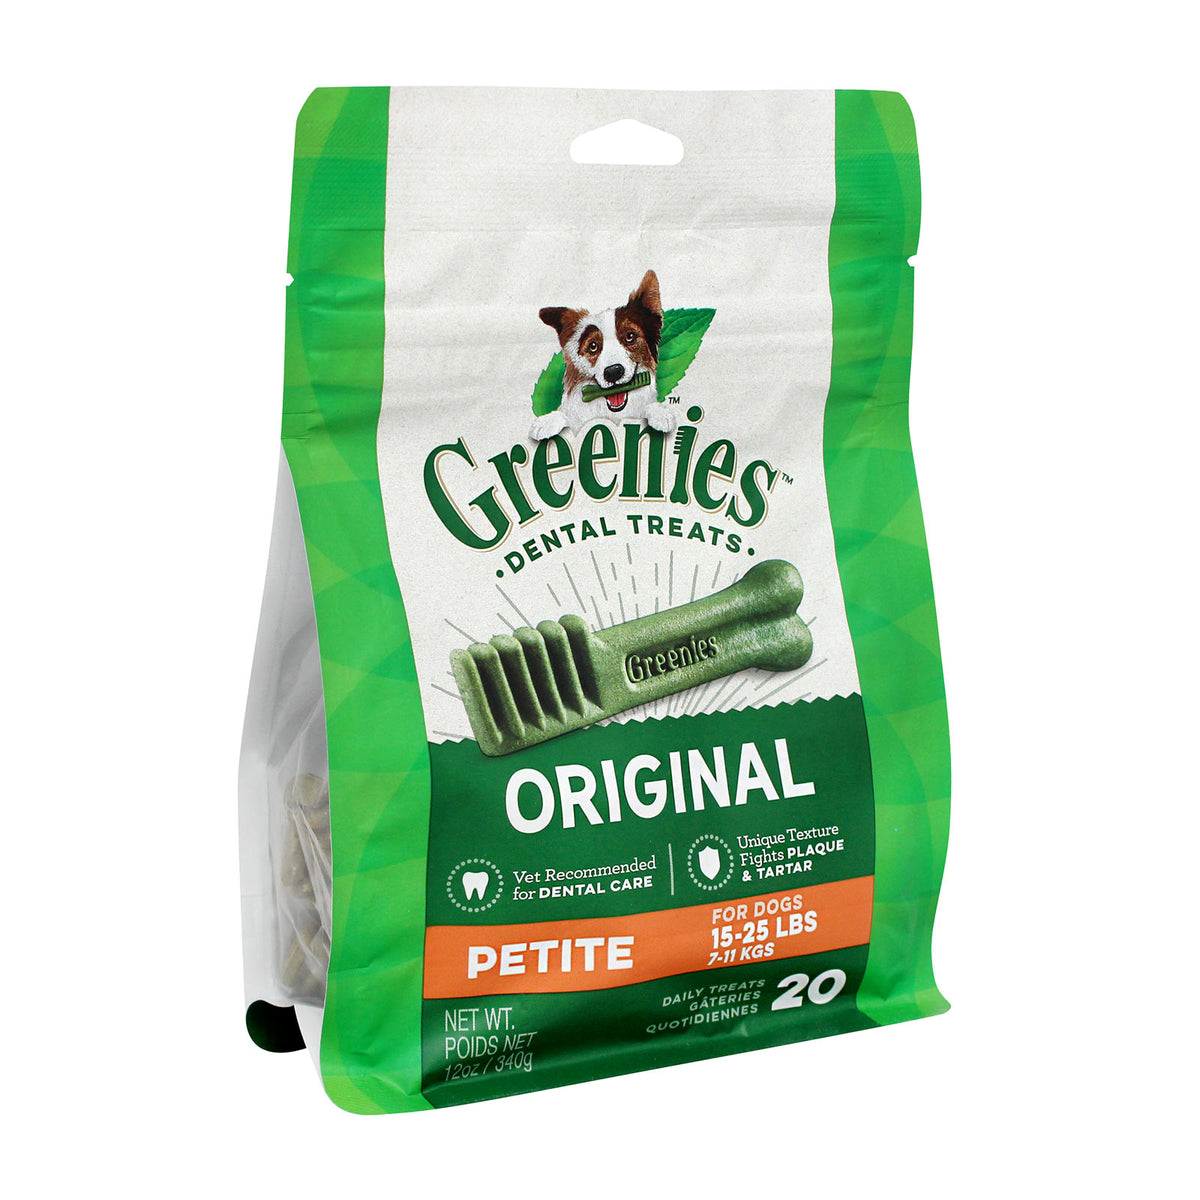 Greenies Dental Treats for Dogs - Original